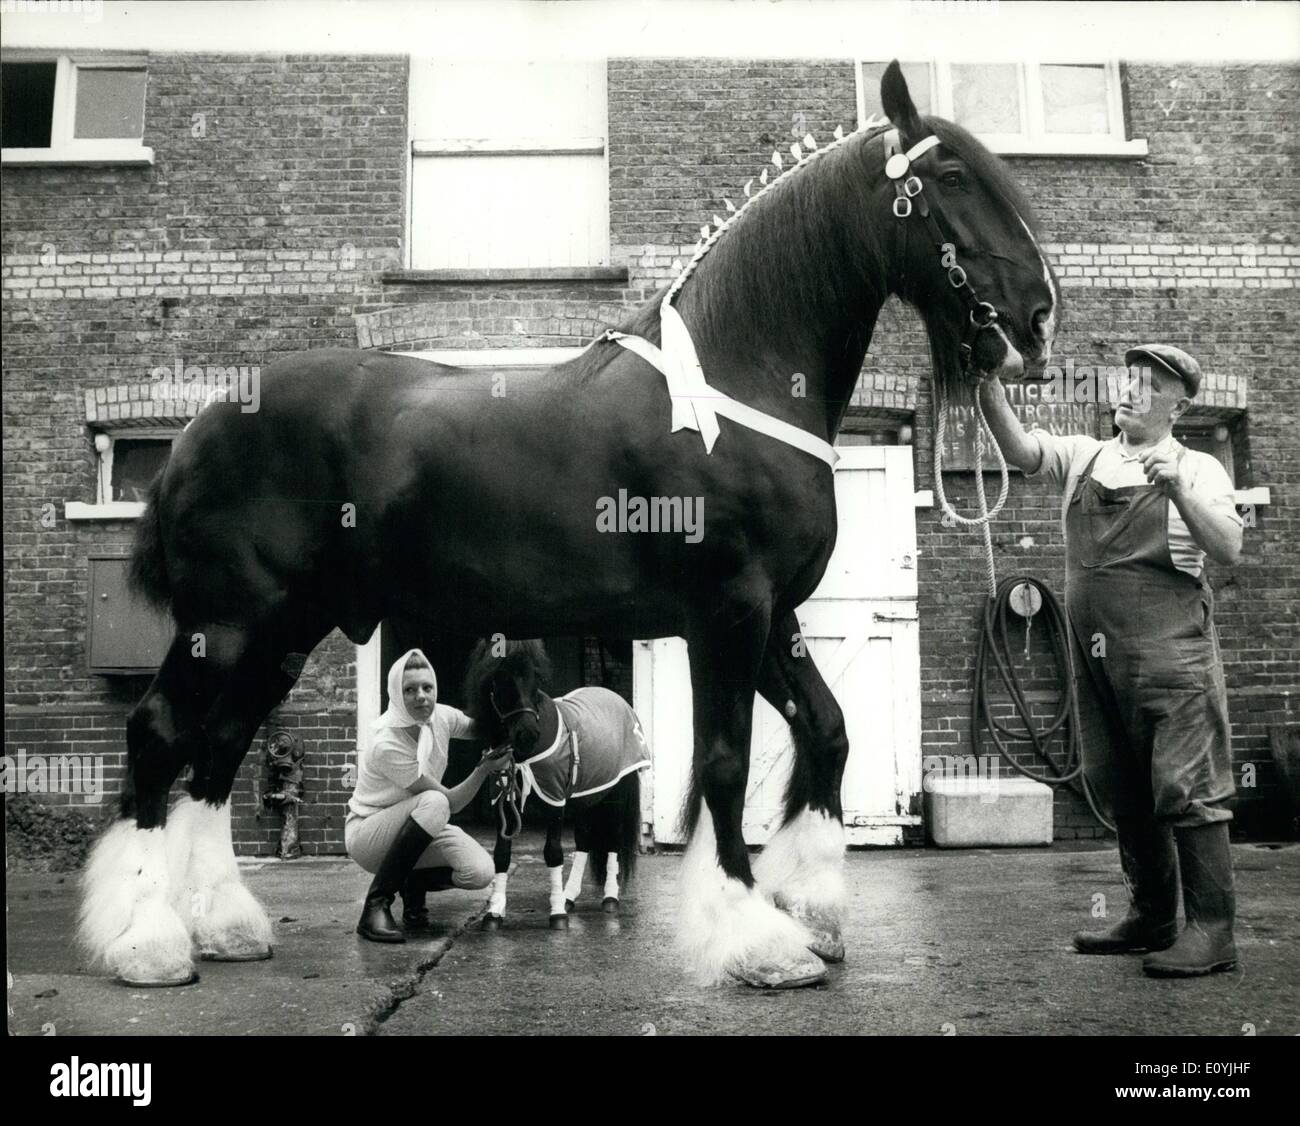 Jul 07, 1970 - El largo y corto de él: ''Robert'', el caballo de shire Young's Brewery, quién es el caballo más alto en Gran Bretaña Foto de stock